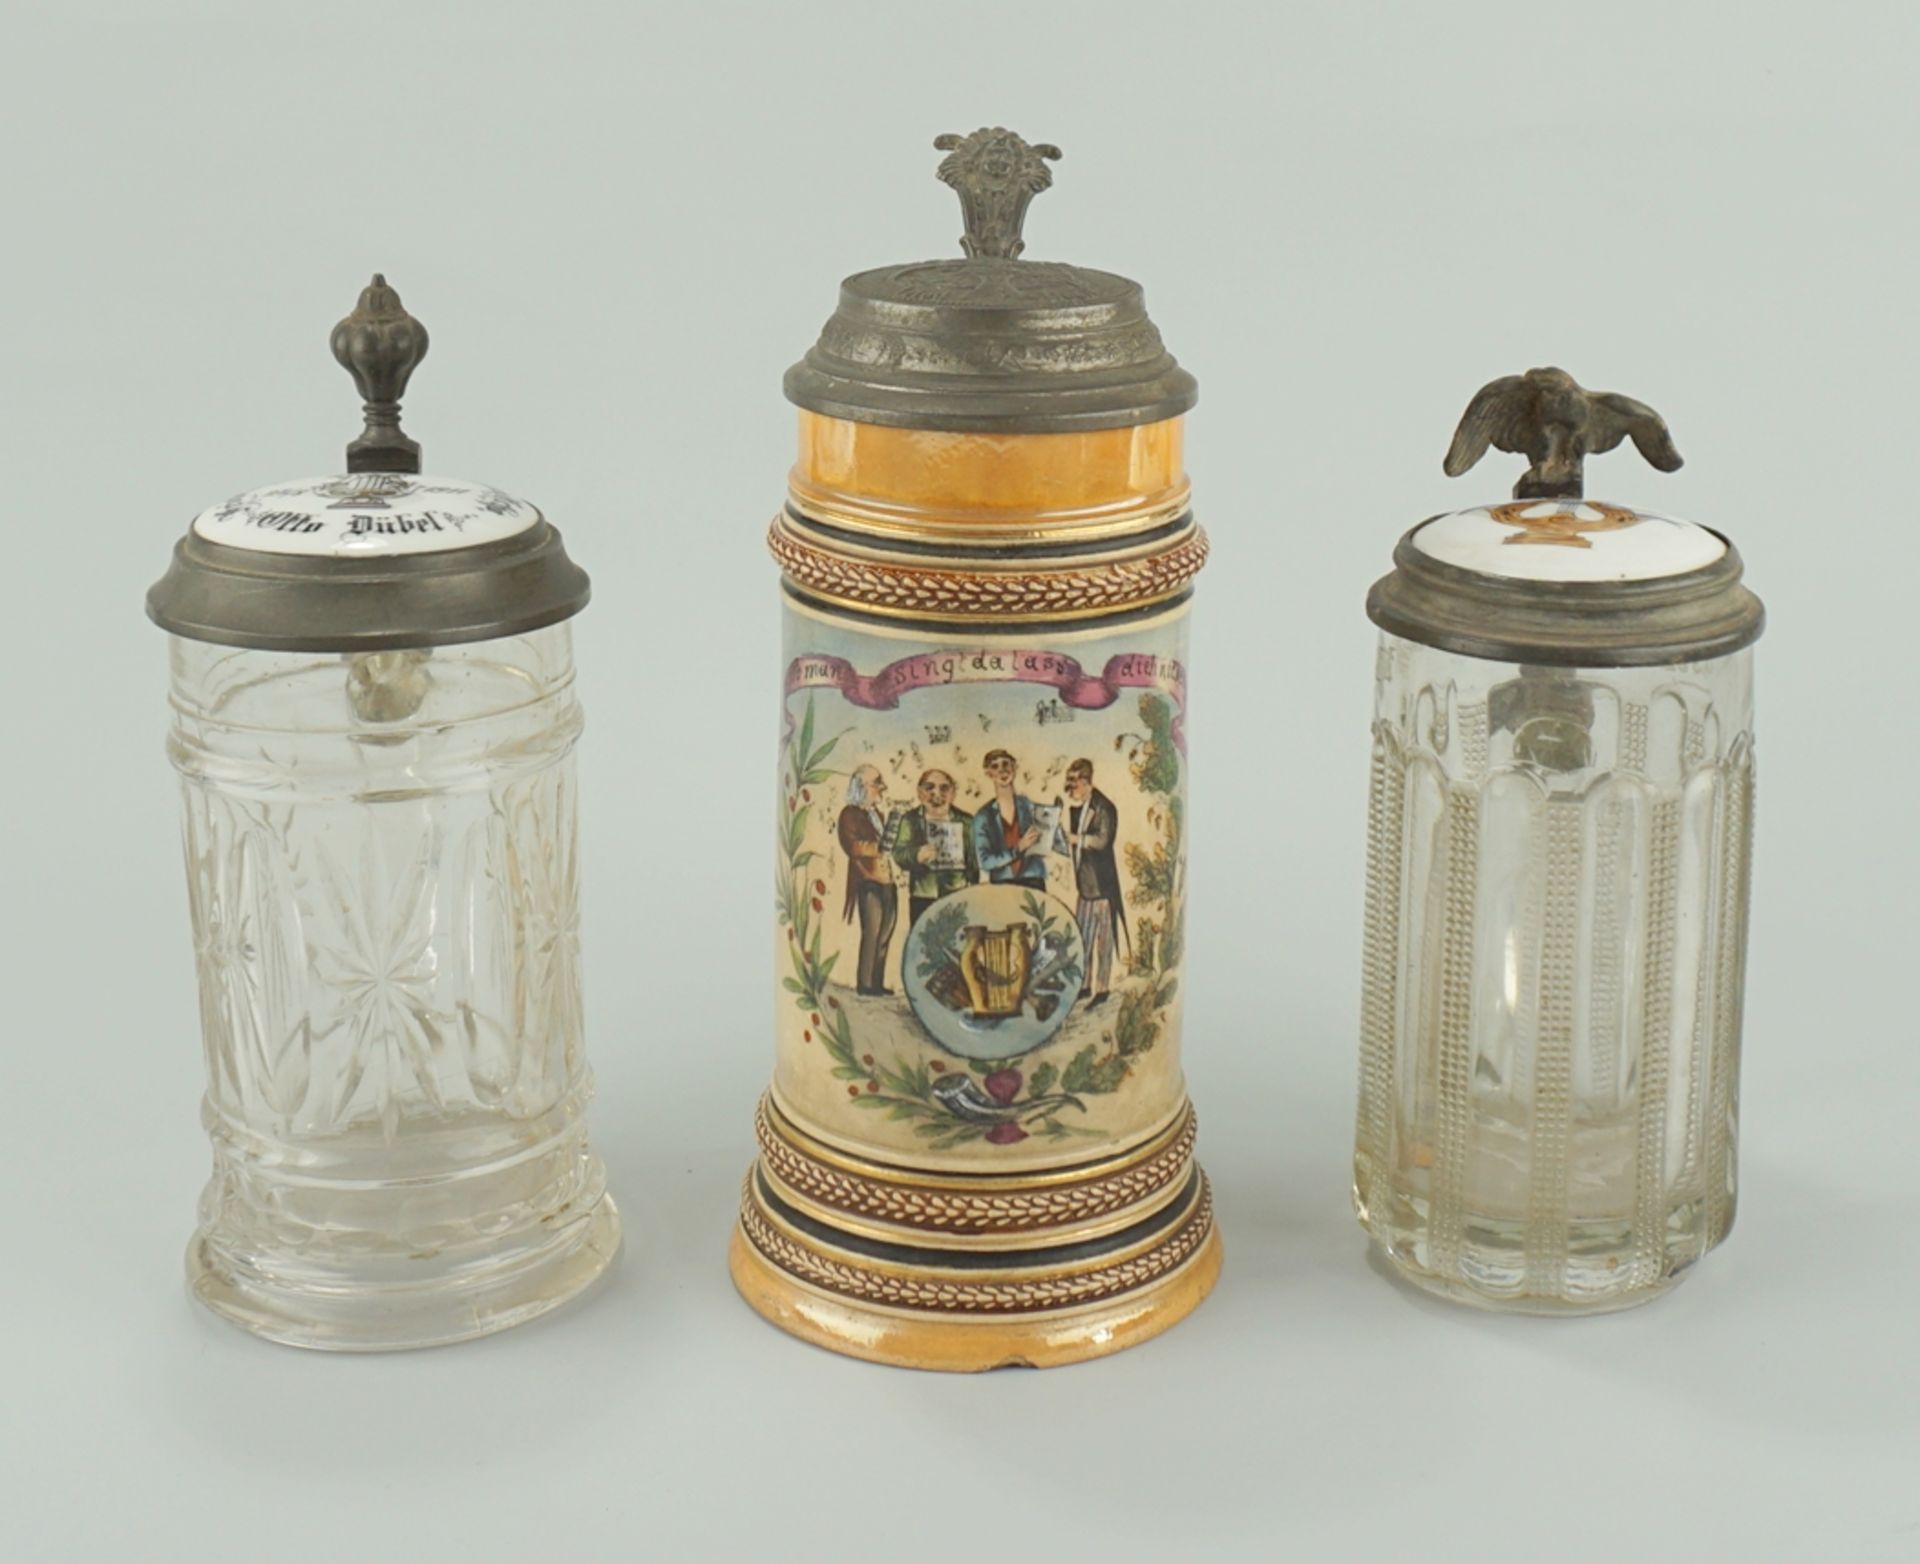 3x Bierkrüge "Sängerbund", davon 1x Keramik und 2x Glas mit Porzellandeckel, um 1880/1900 - Image 2 of 3